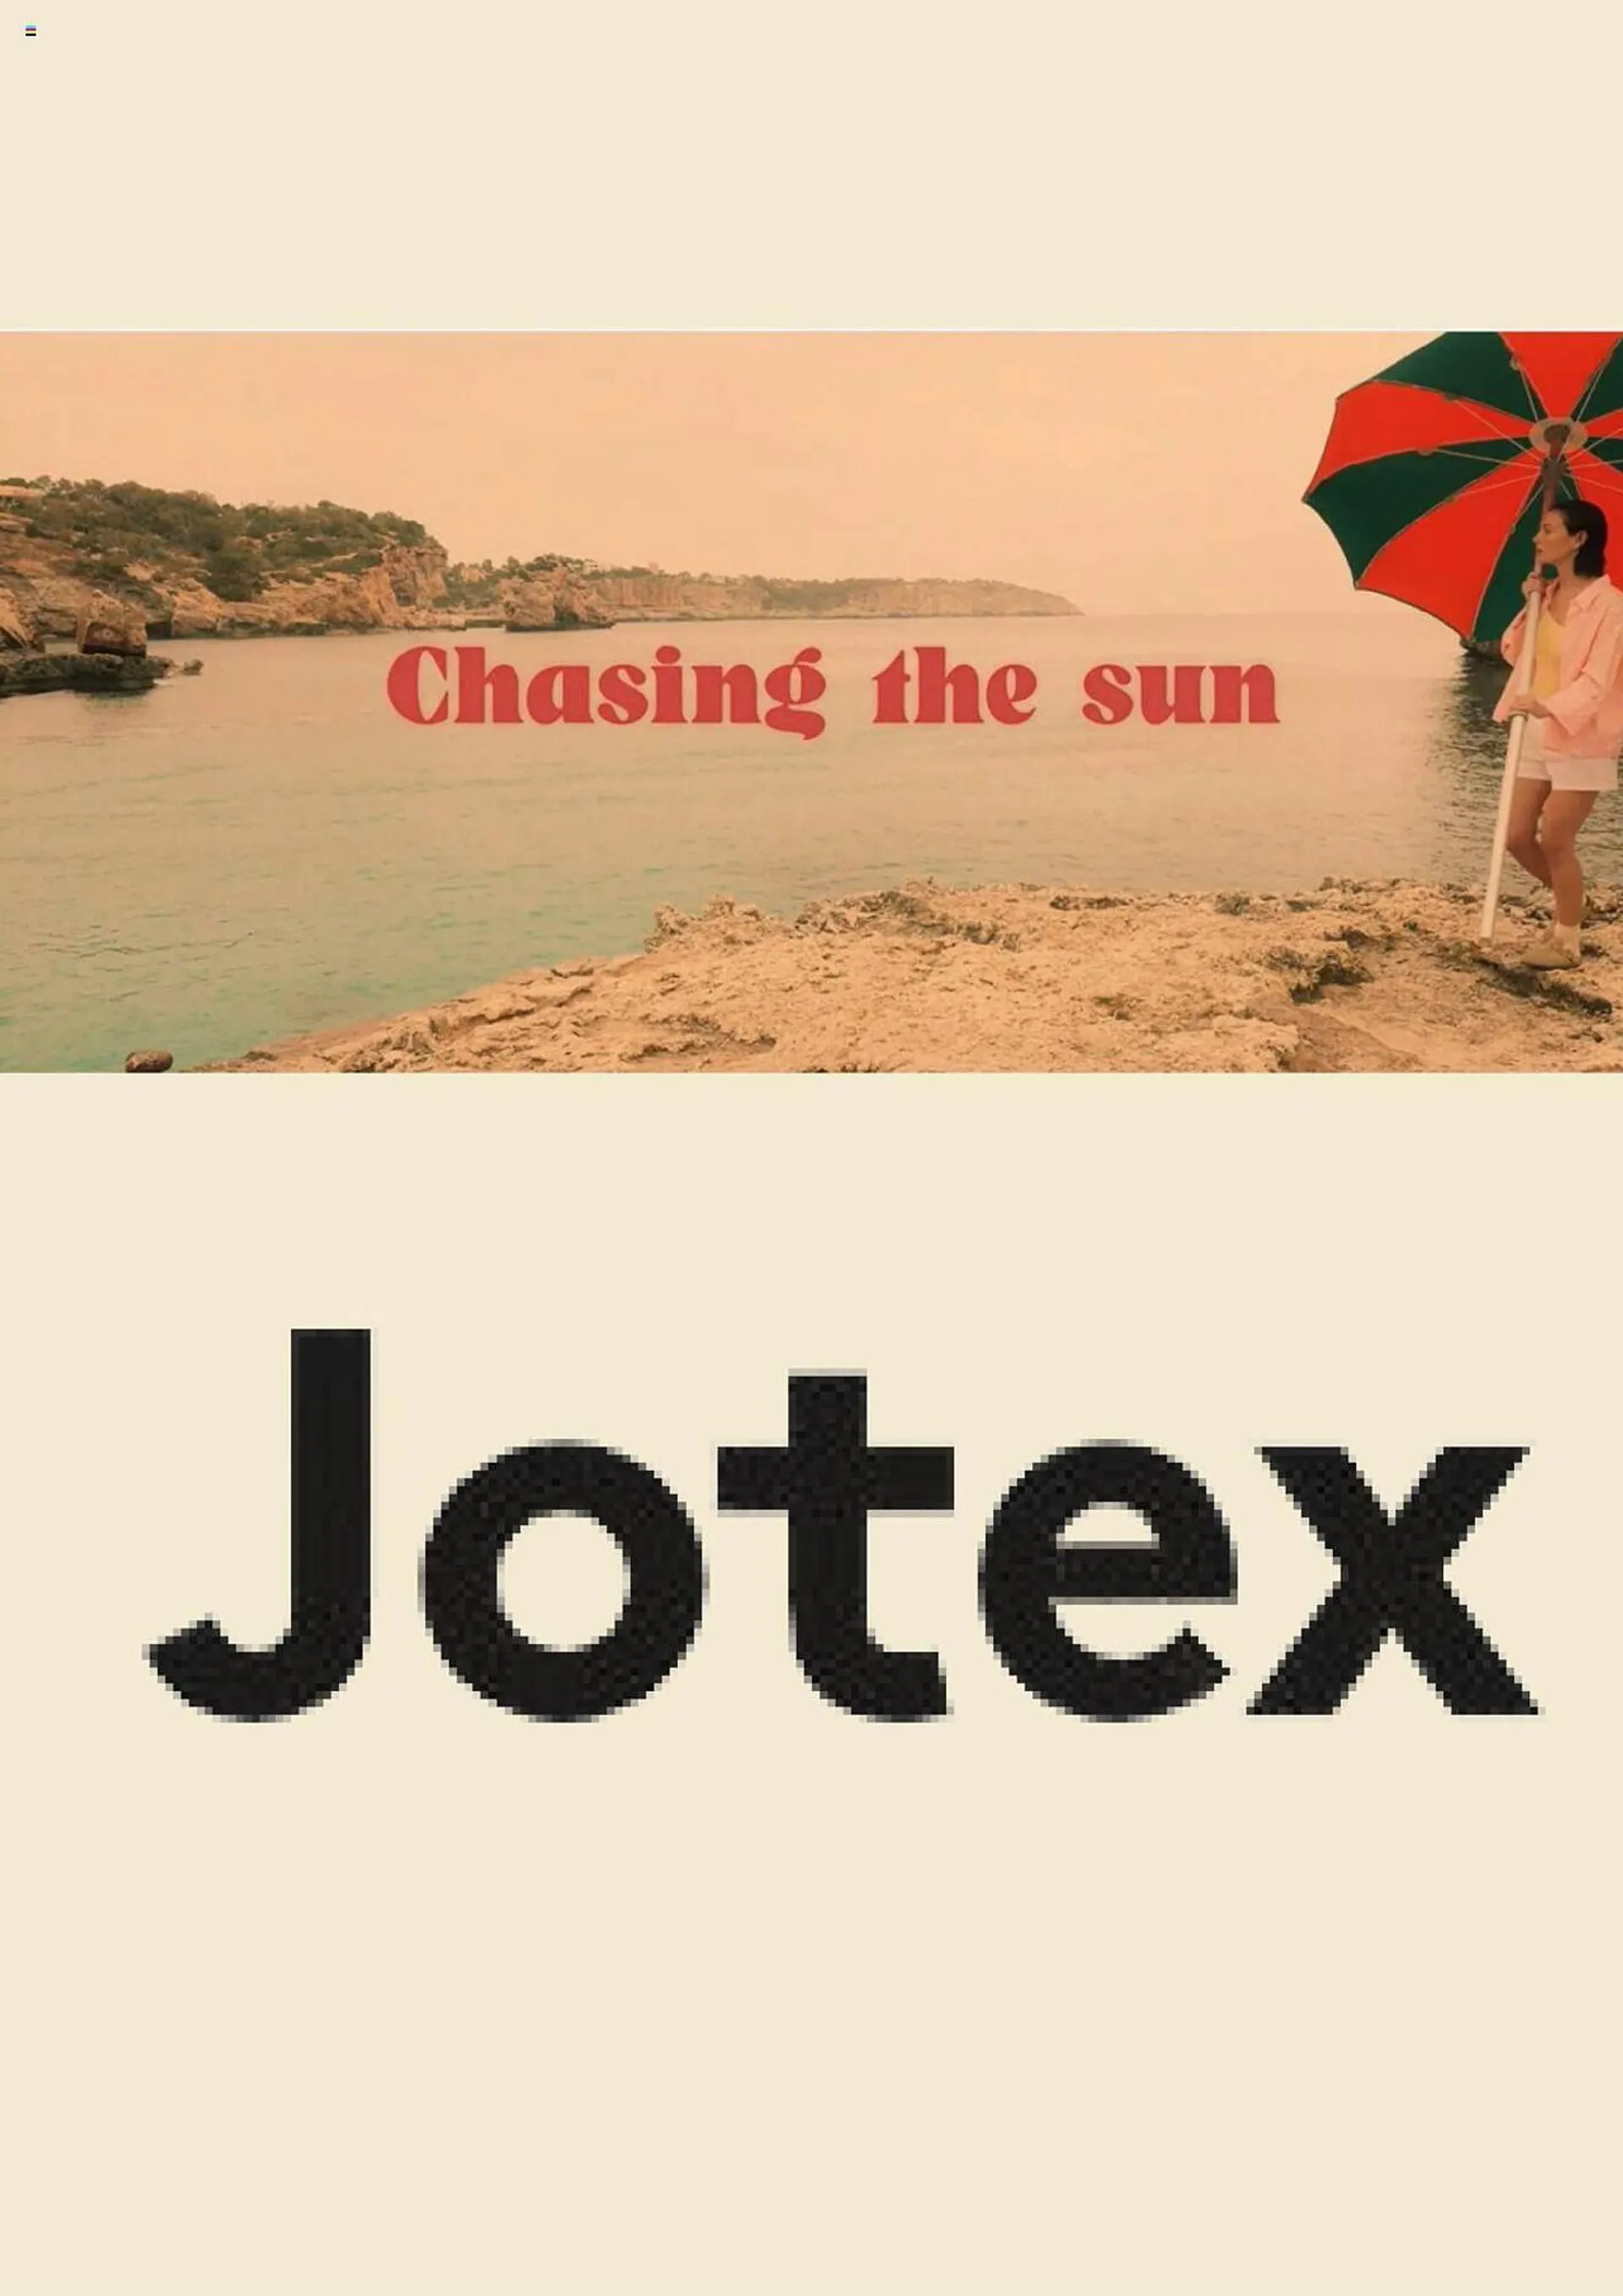 Jotex reklamblad - 1